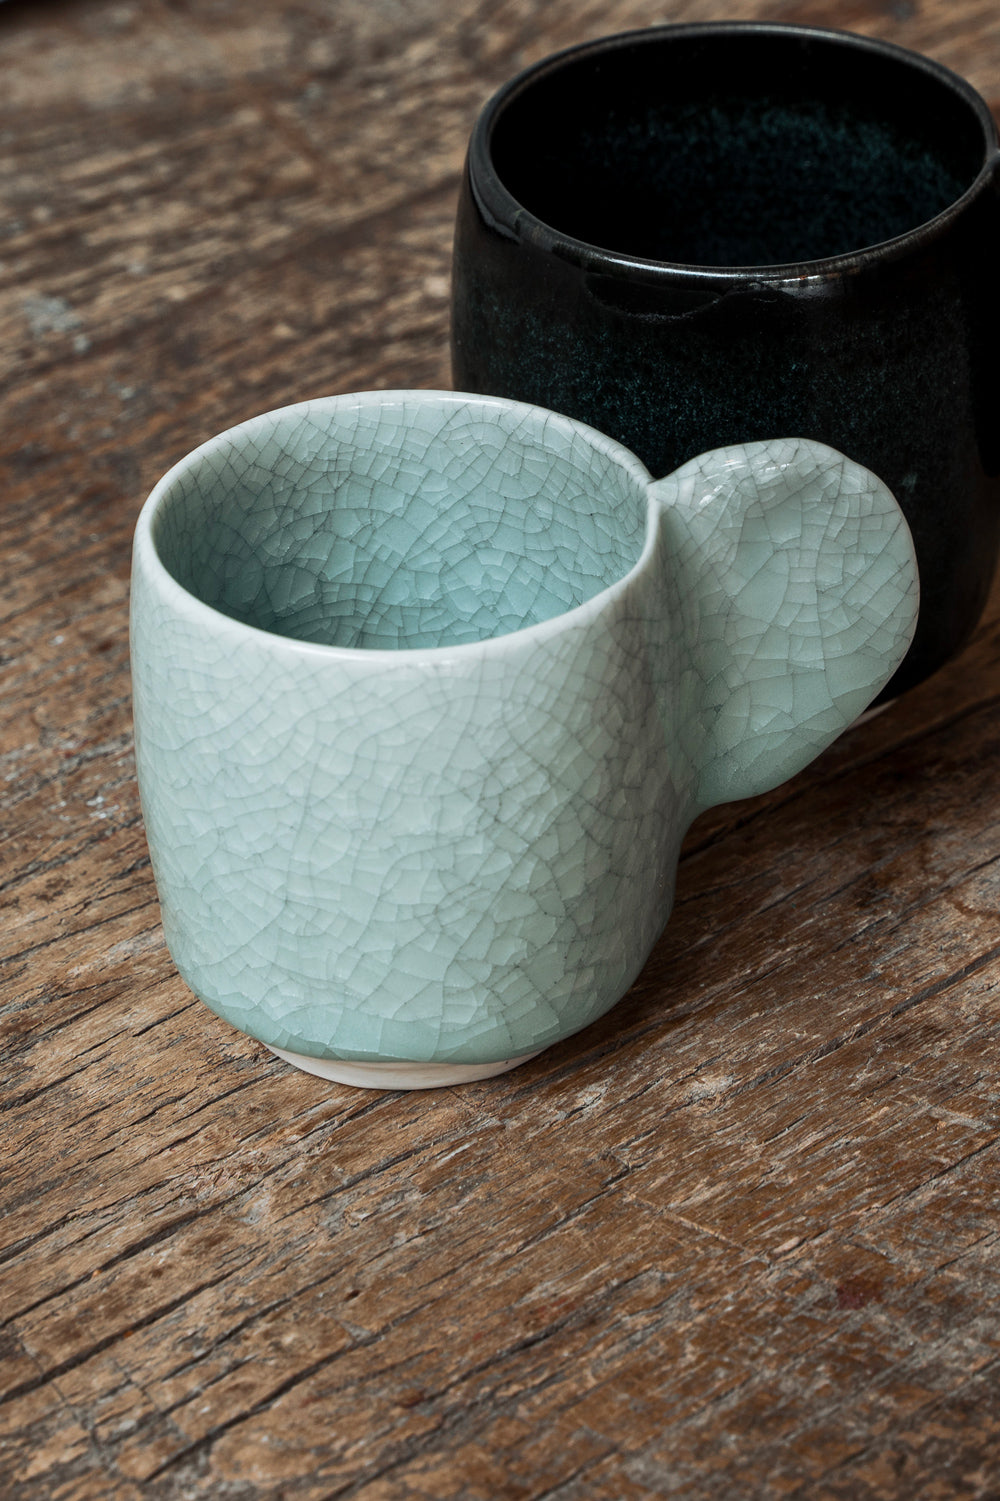 How to care for handmade ceramics?